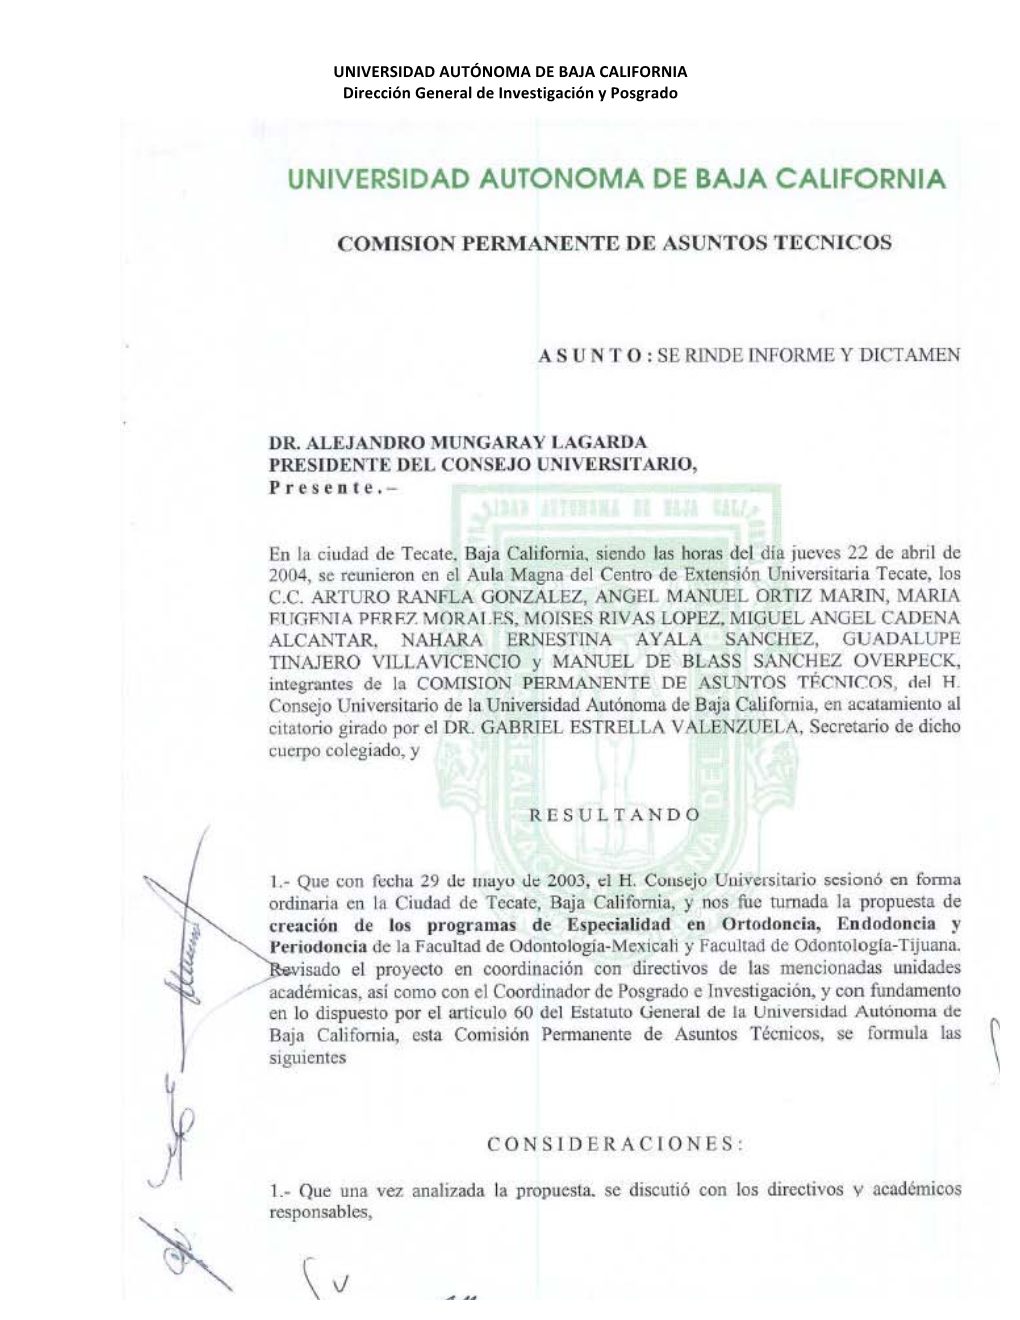 UNIVERSIDAD AUTÓNOMA DE BAJA CALIFORNIA Dirección General De Investigación Y Posgrado